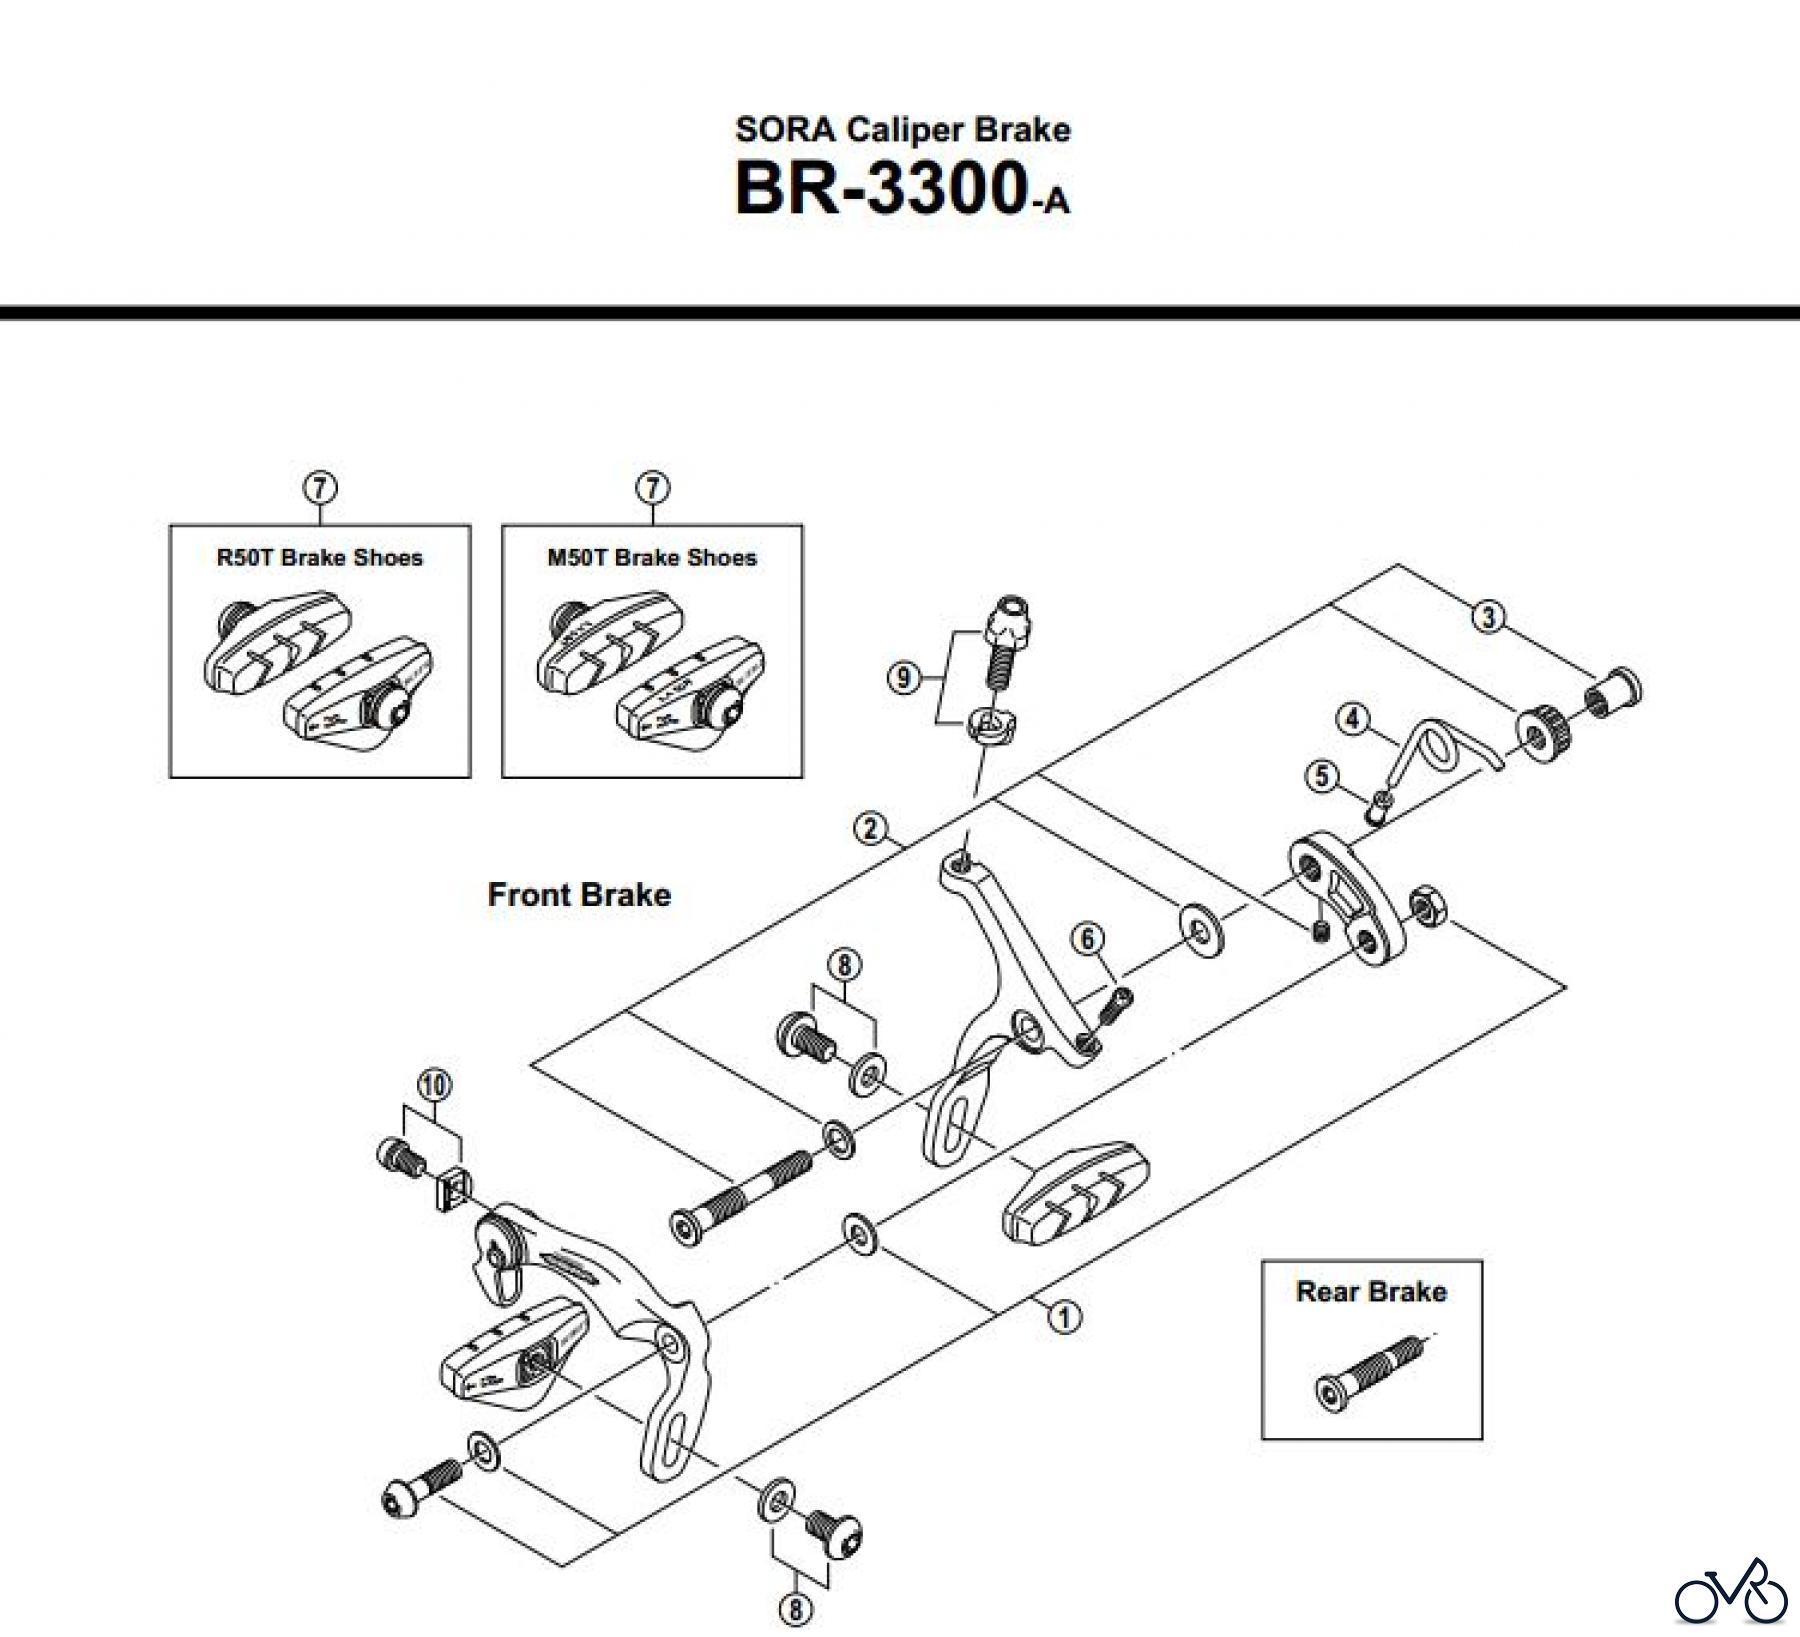  Shimano BR Brake - Bremse BR-3300-A-2543